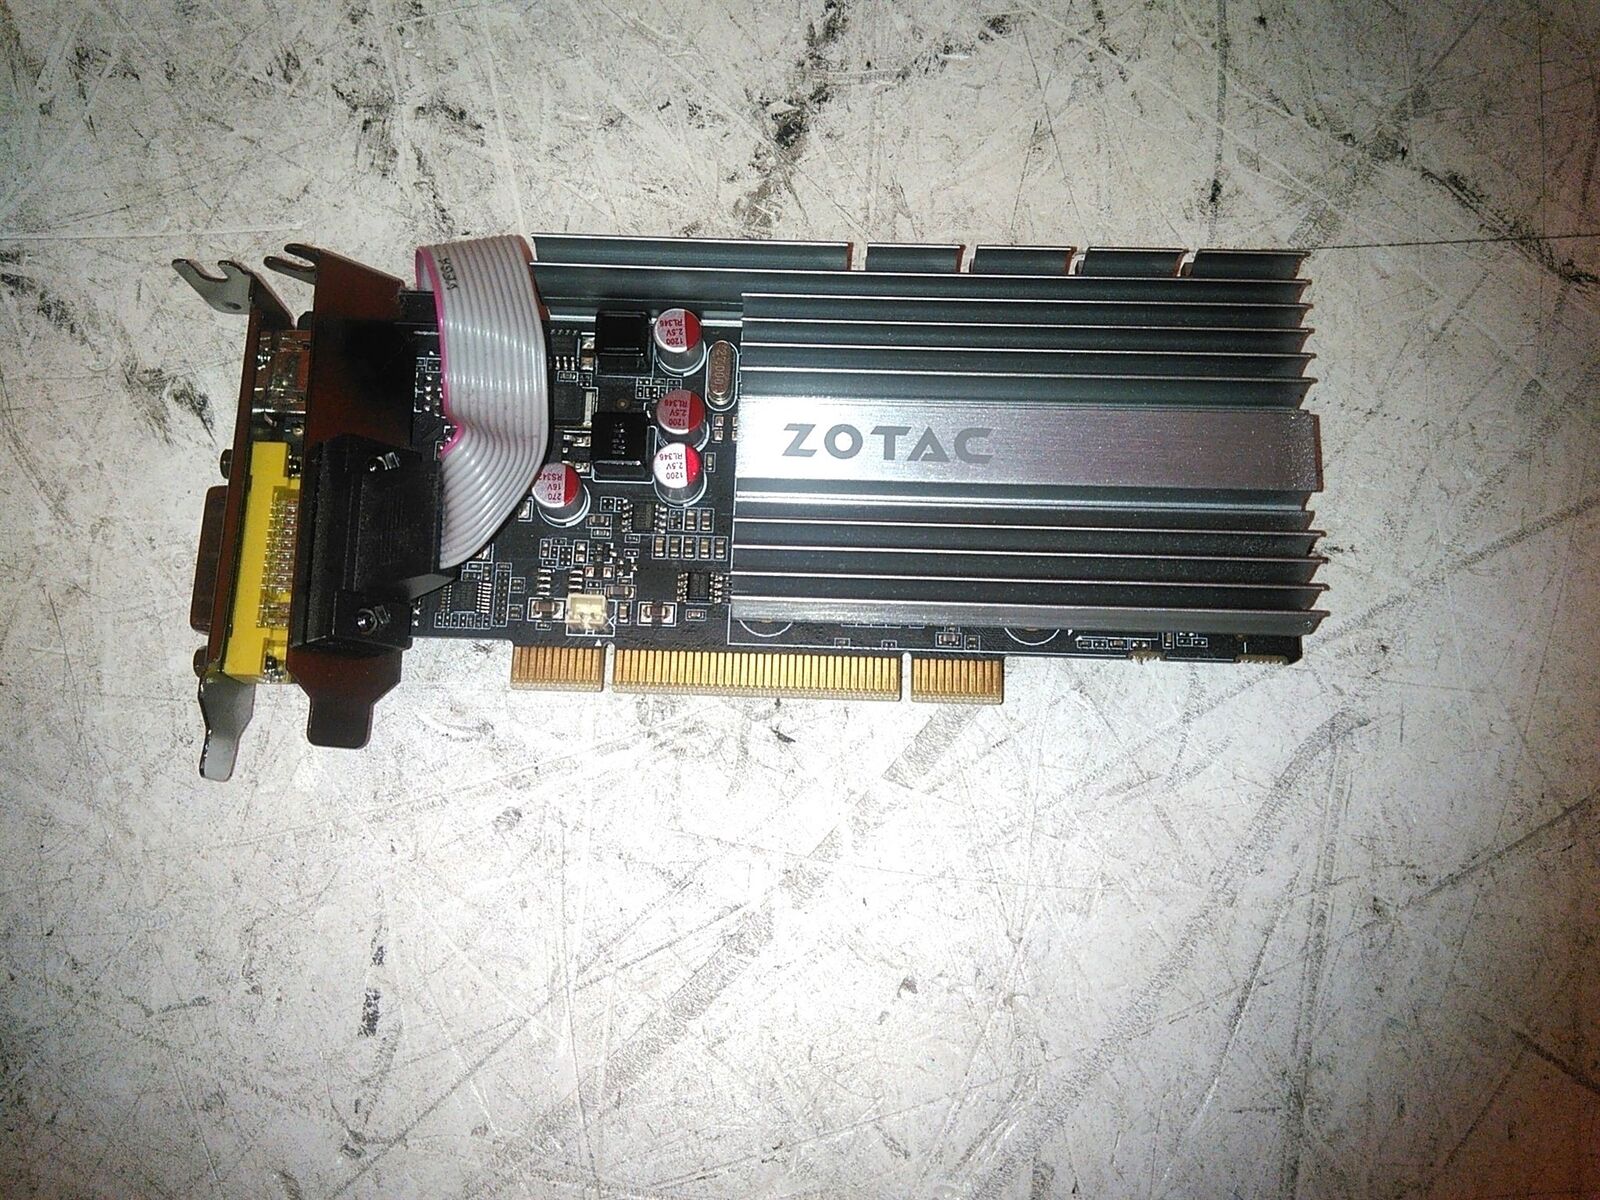 Zotac GT610 512MB Fanless Low Profile PCI Graphics Card